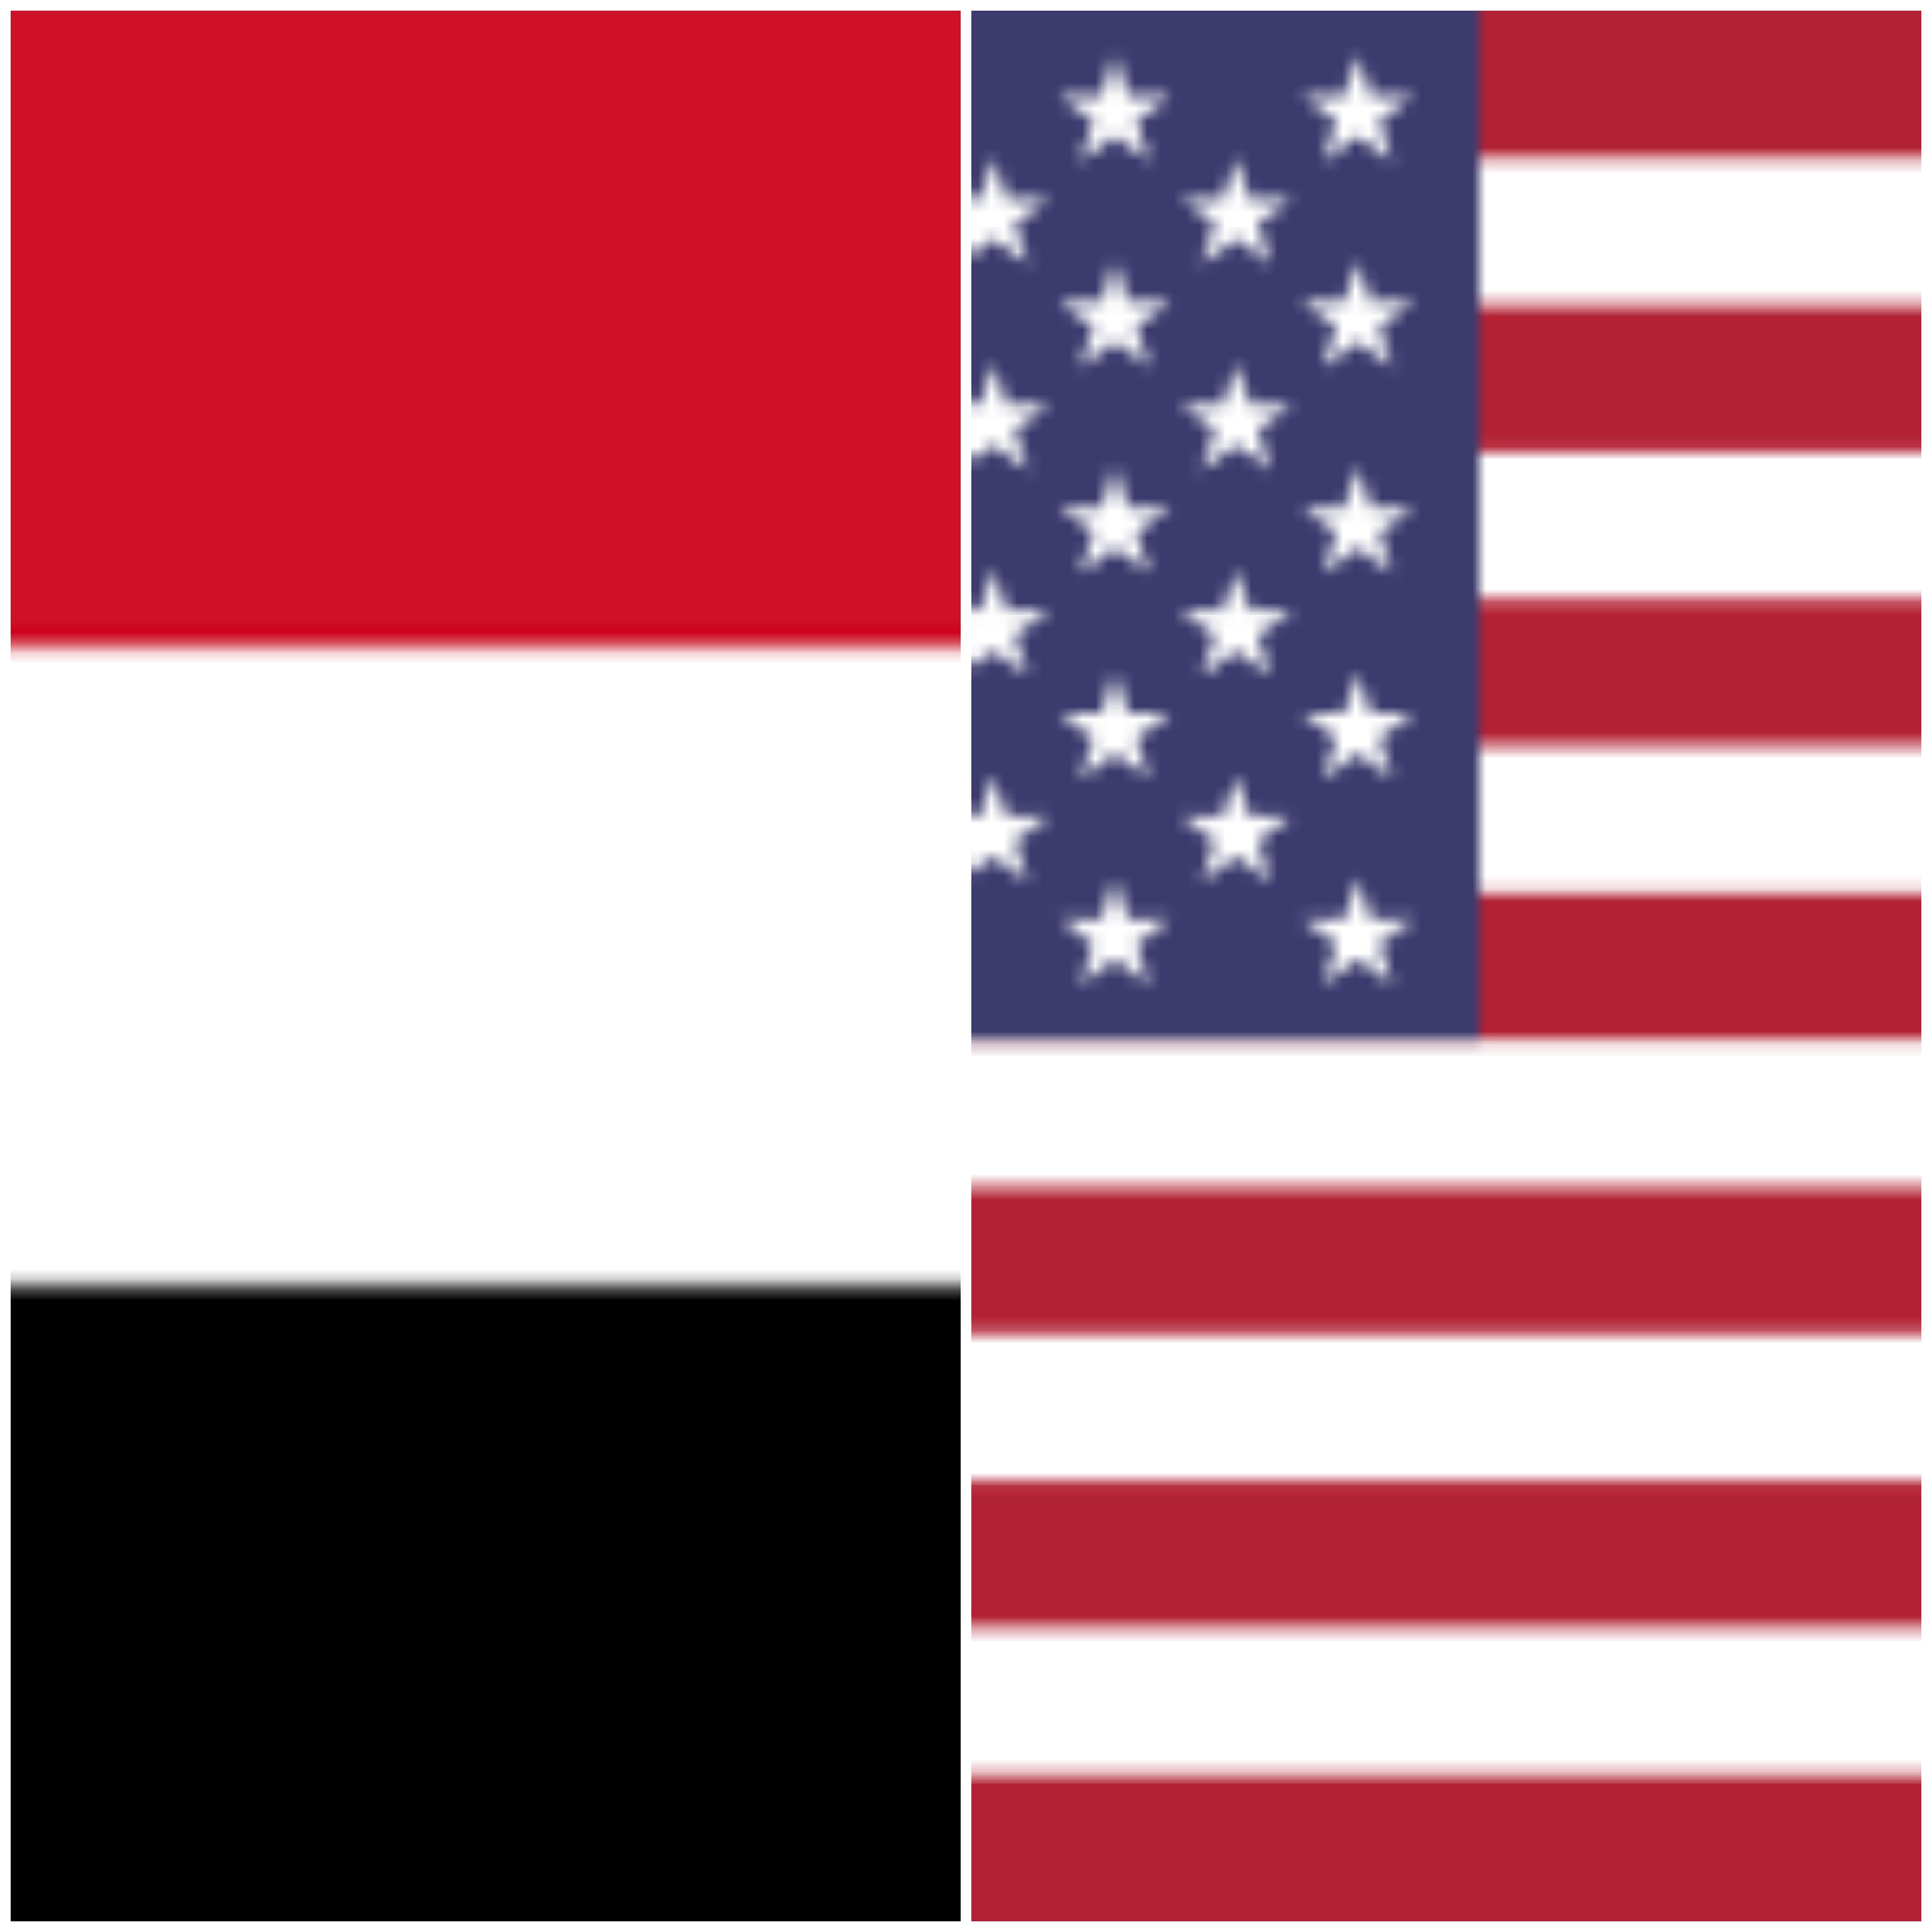 عاجل وزارة الخارجية الأمريكية تعلن إجراء محادثات مباشرة مع الحوثيين بعد إخفاق حكومة الشرعية لإنهاء الحرب وإحلال السلام في اليمن